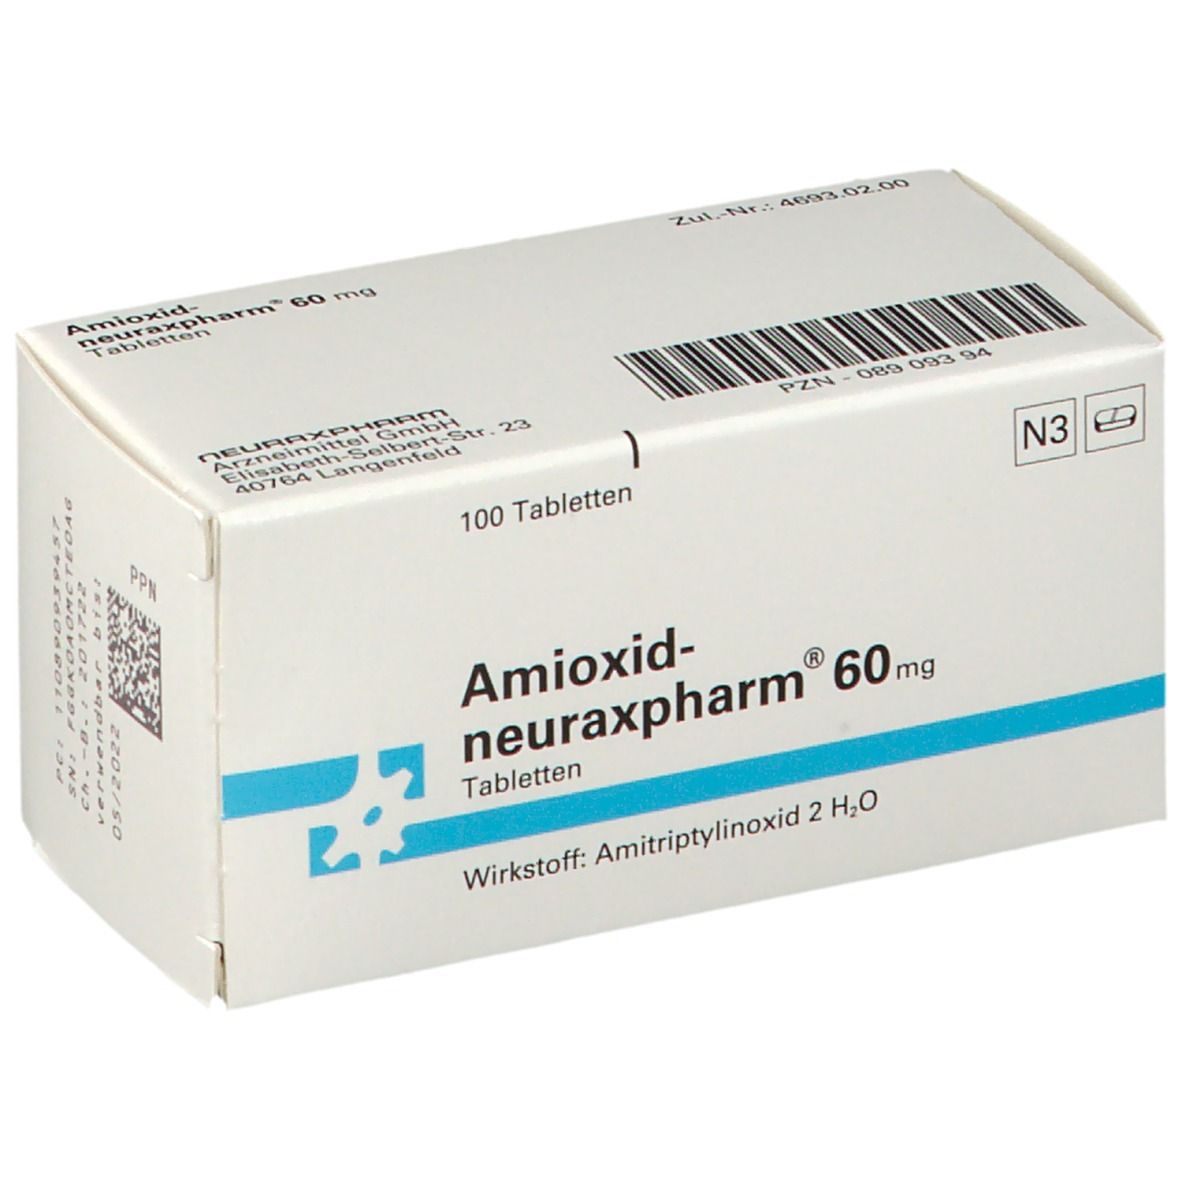 Amioxid-neuraxpharm® 60 mg